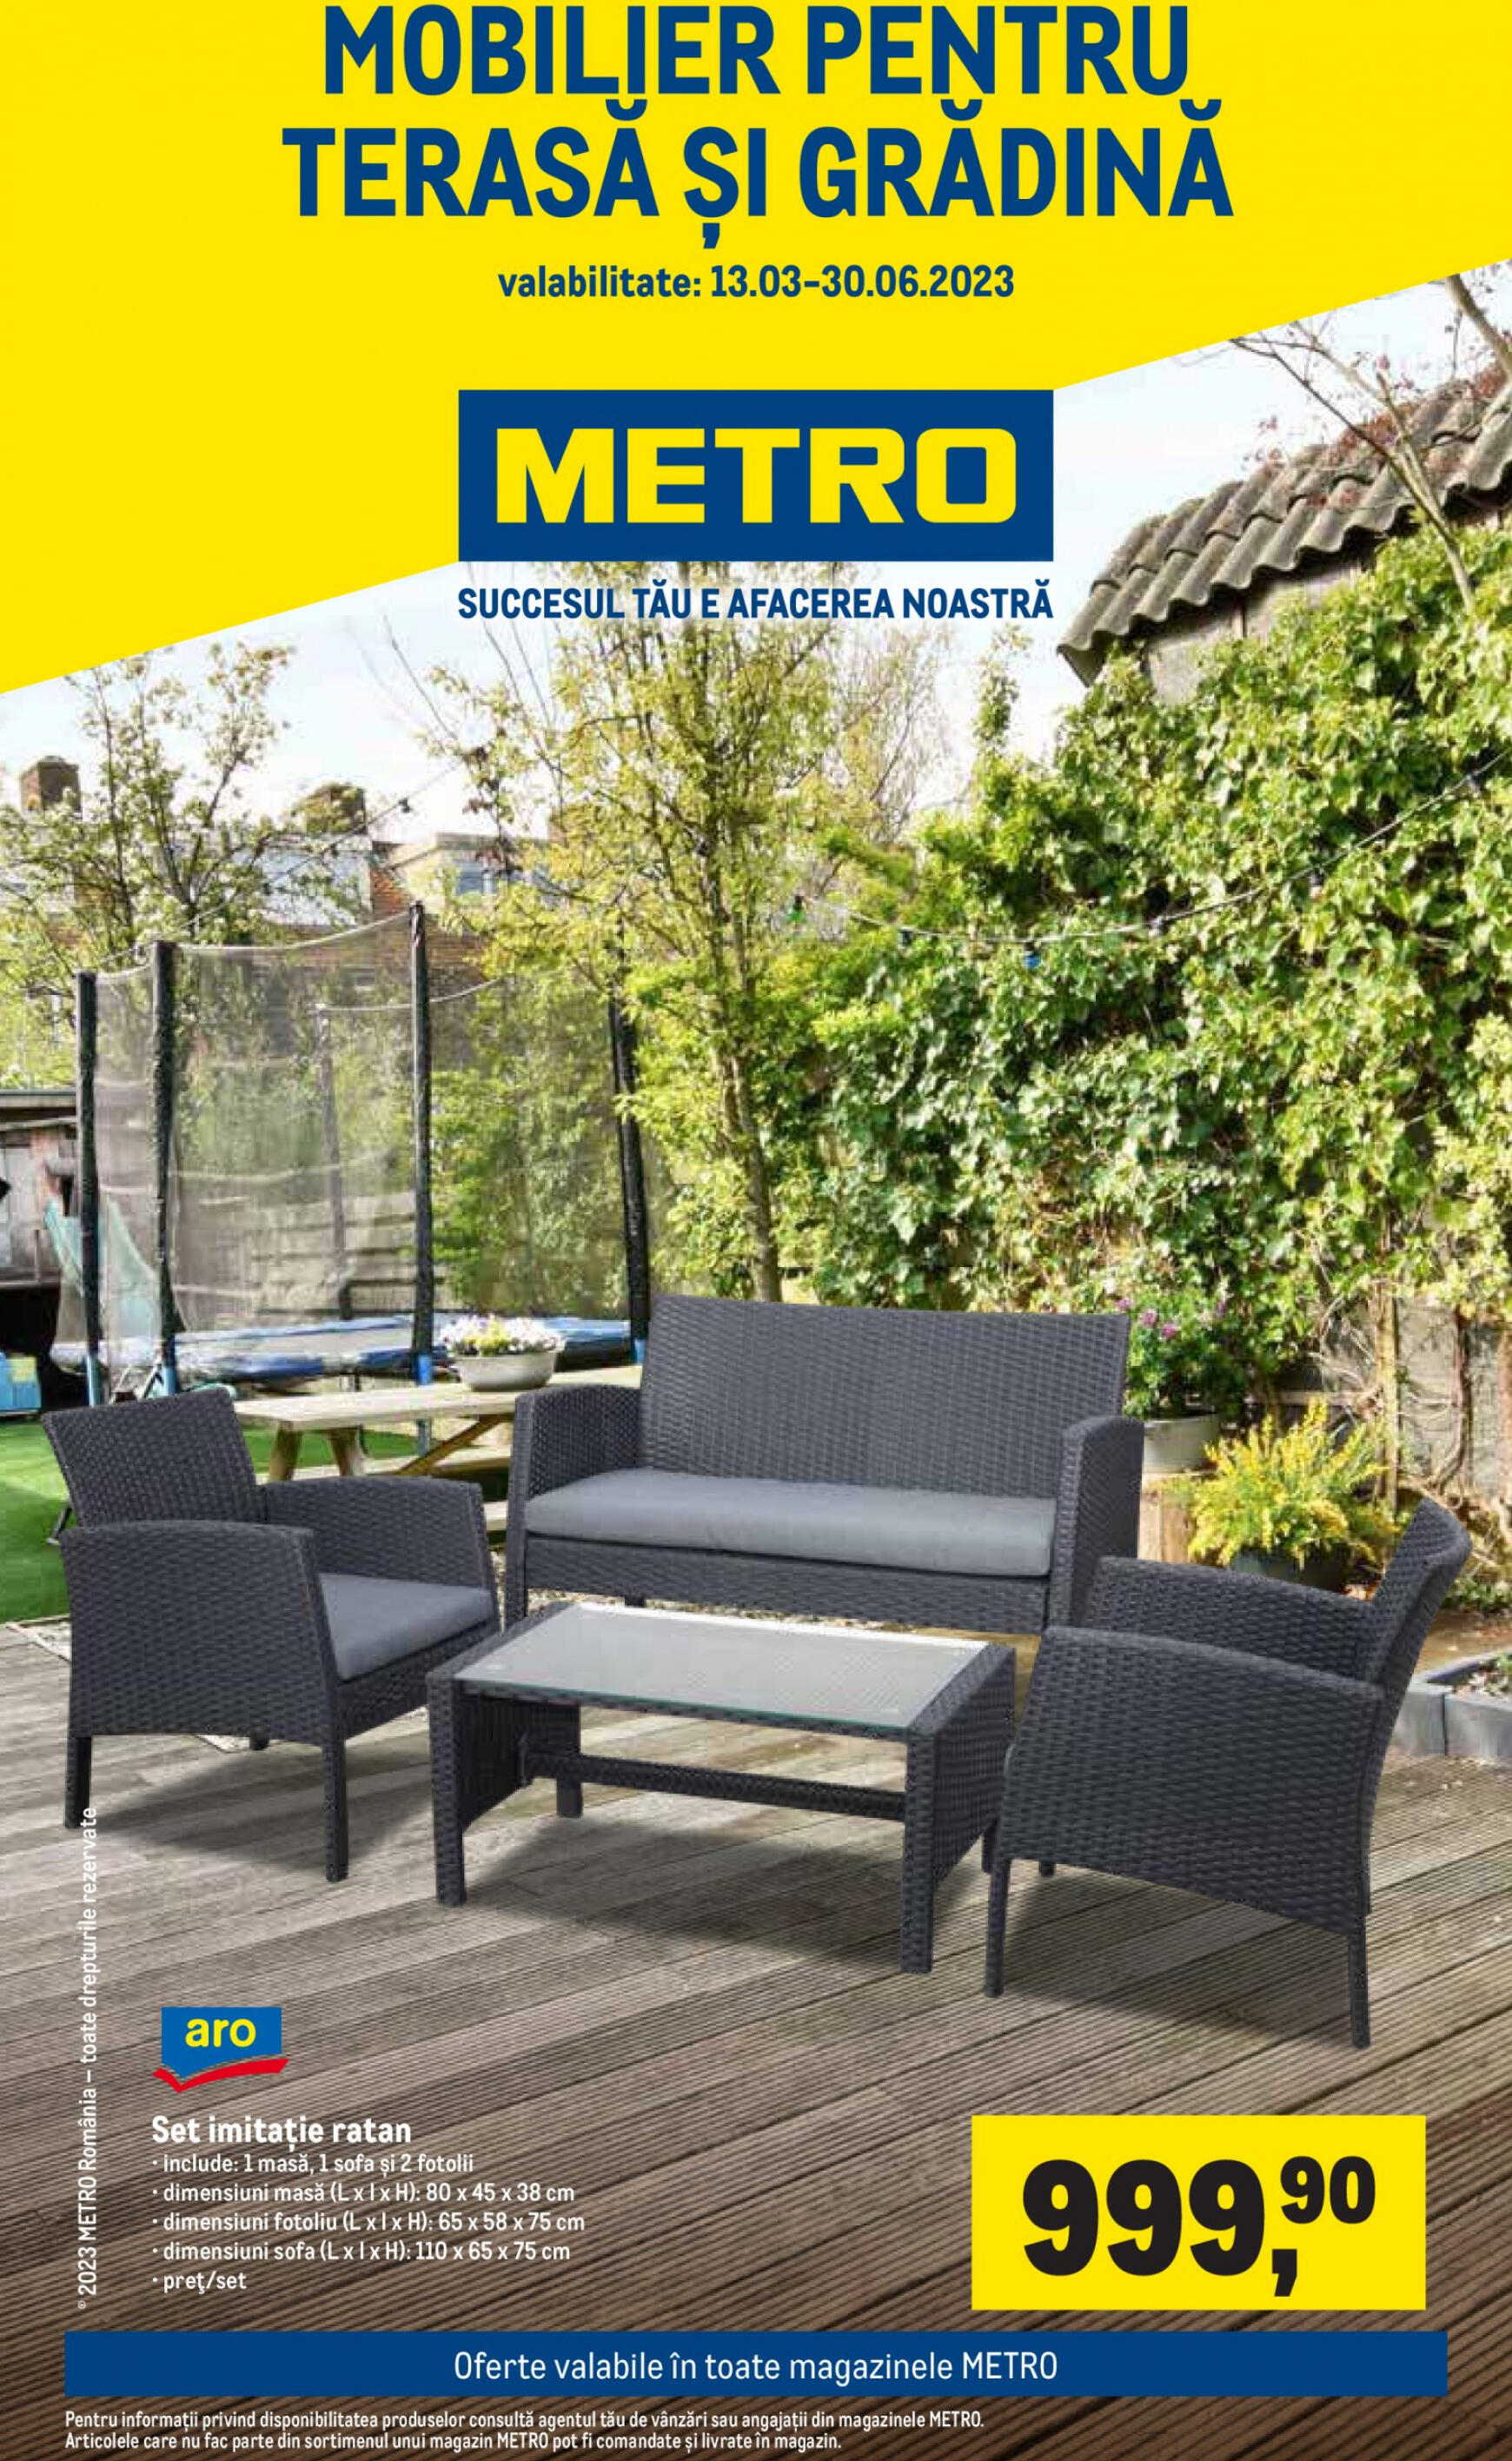 metro - Metro - Mobilier pentru terasă și grădină